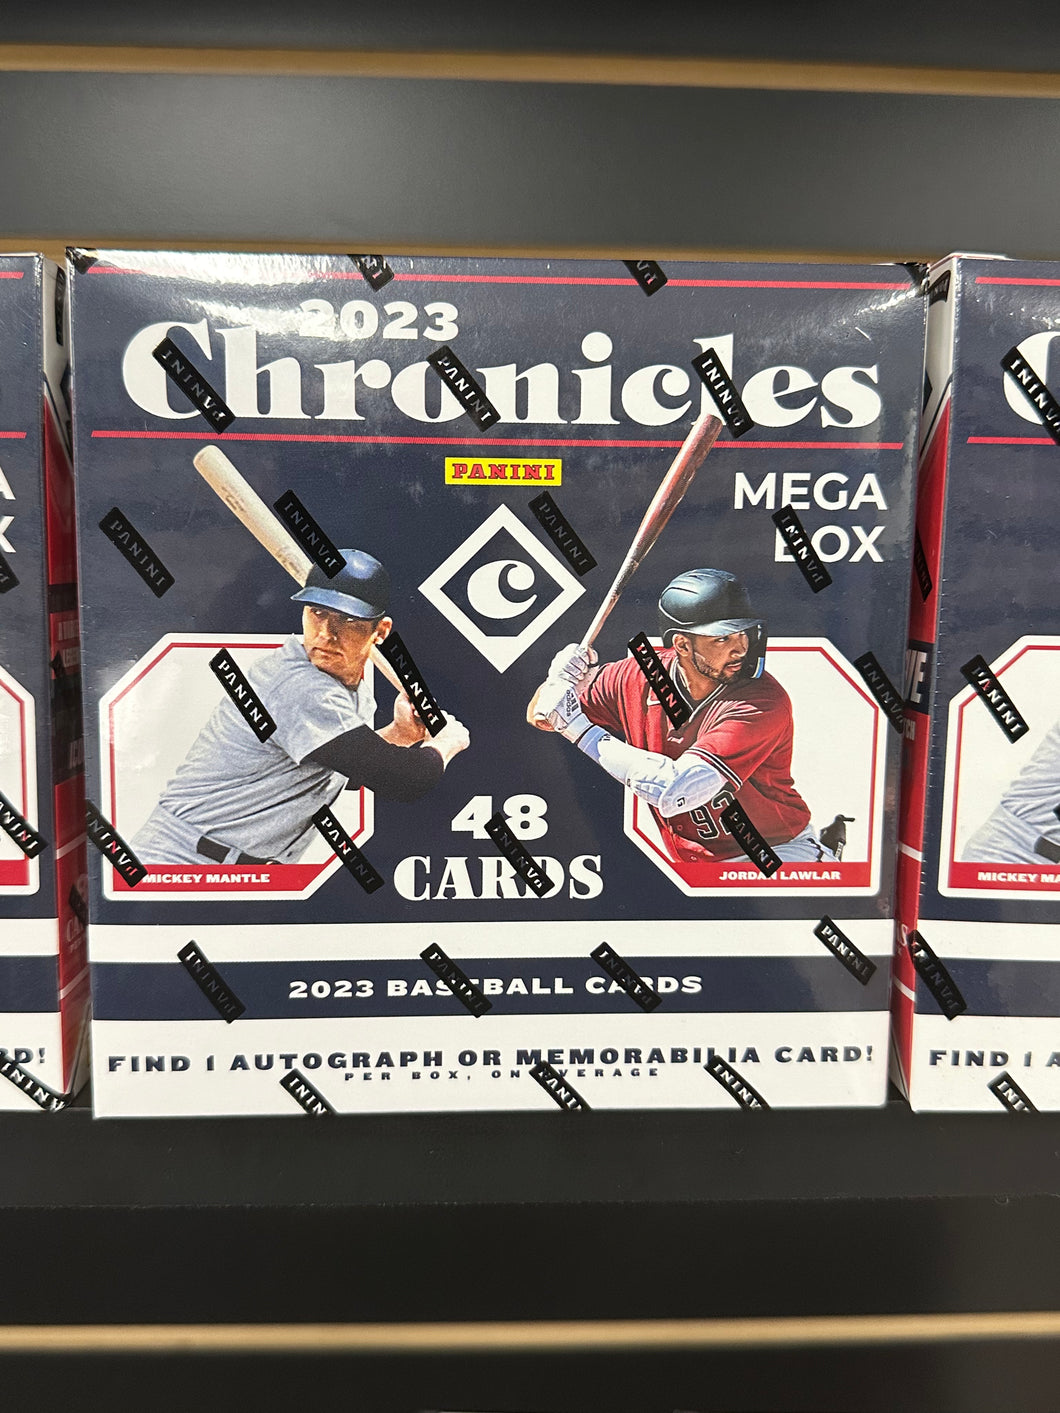 2023 Chronicles Baseball Mega Box